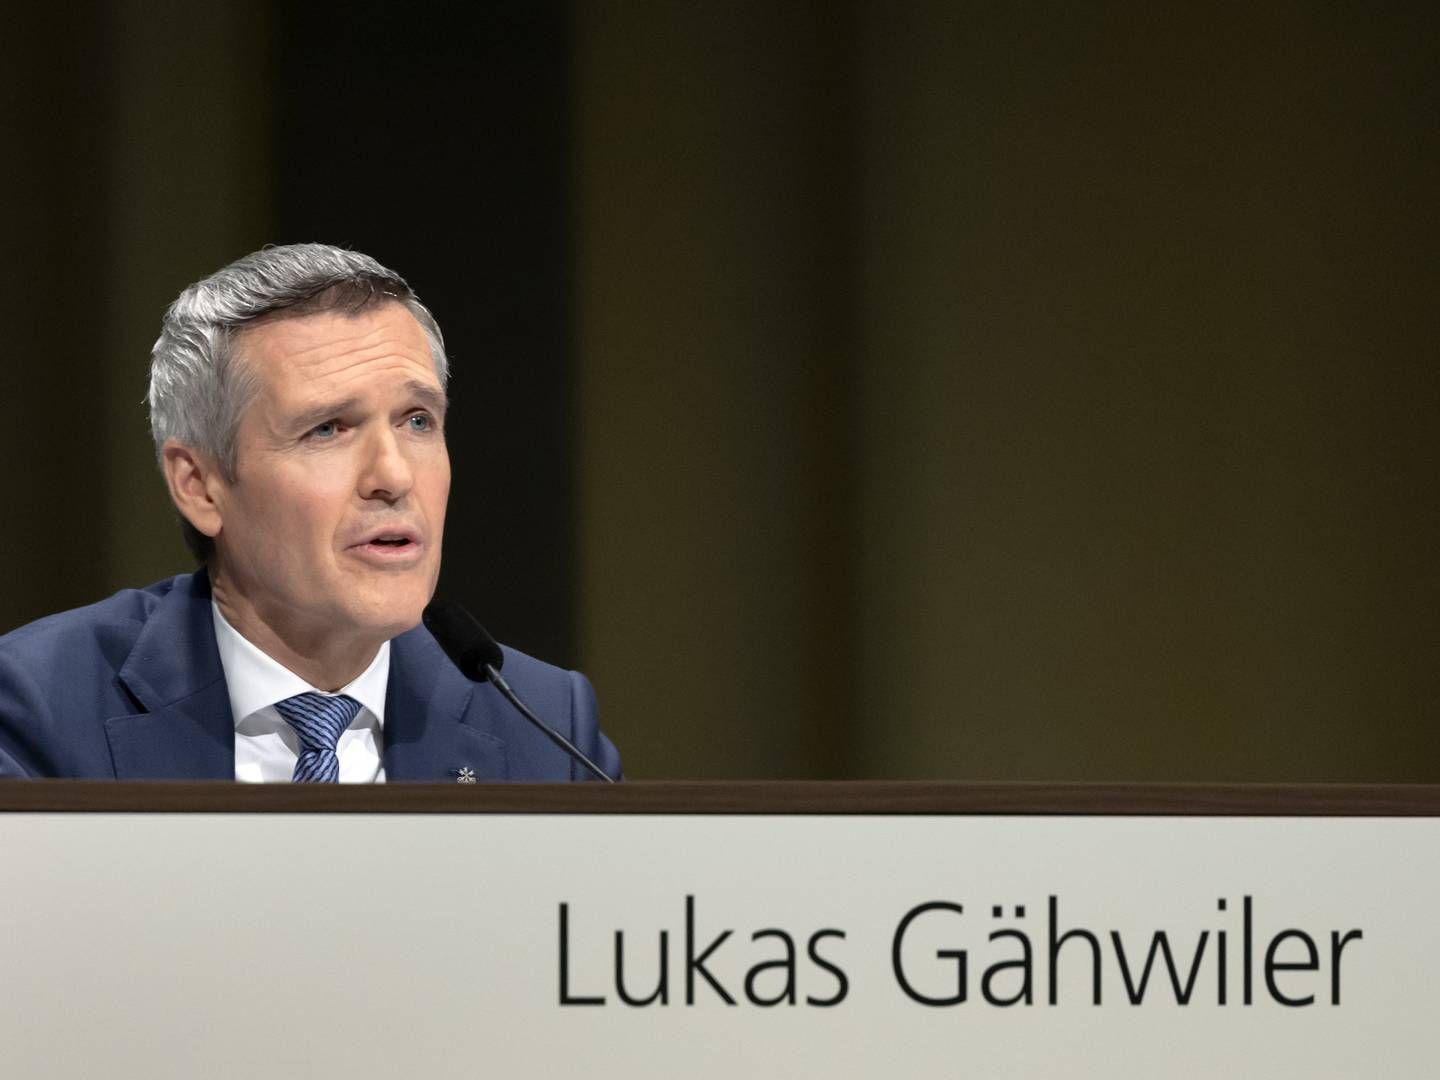 Die UBS hofft auf erfolgreiche Lobbyarbeit durch Verwaltungsrats-Vizepräsident Lukas Gähwiler | Photo: picture alliance/KEYSTONE | GEORGIOS KEFALAS